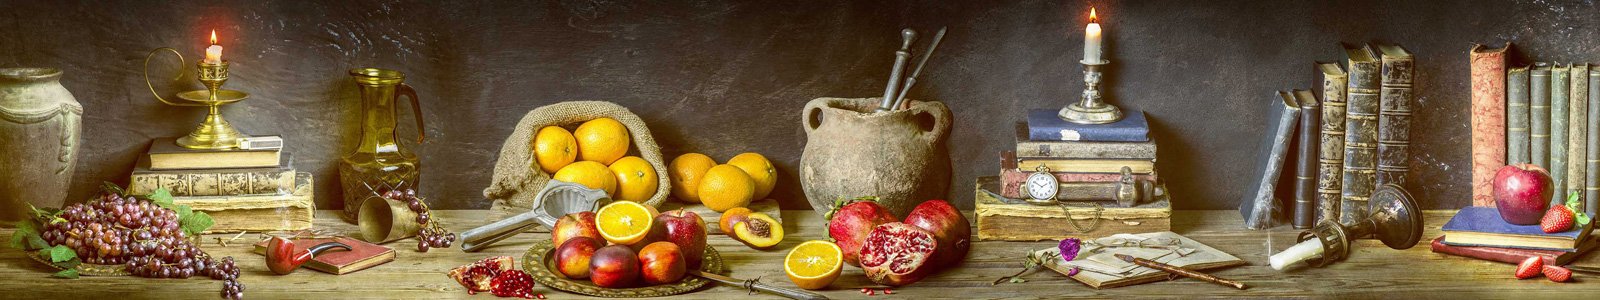 №6794 - Натюрморт со свежими фруктами и старинными предметами